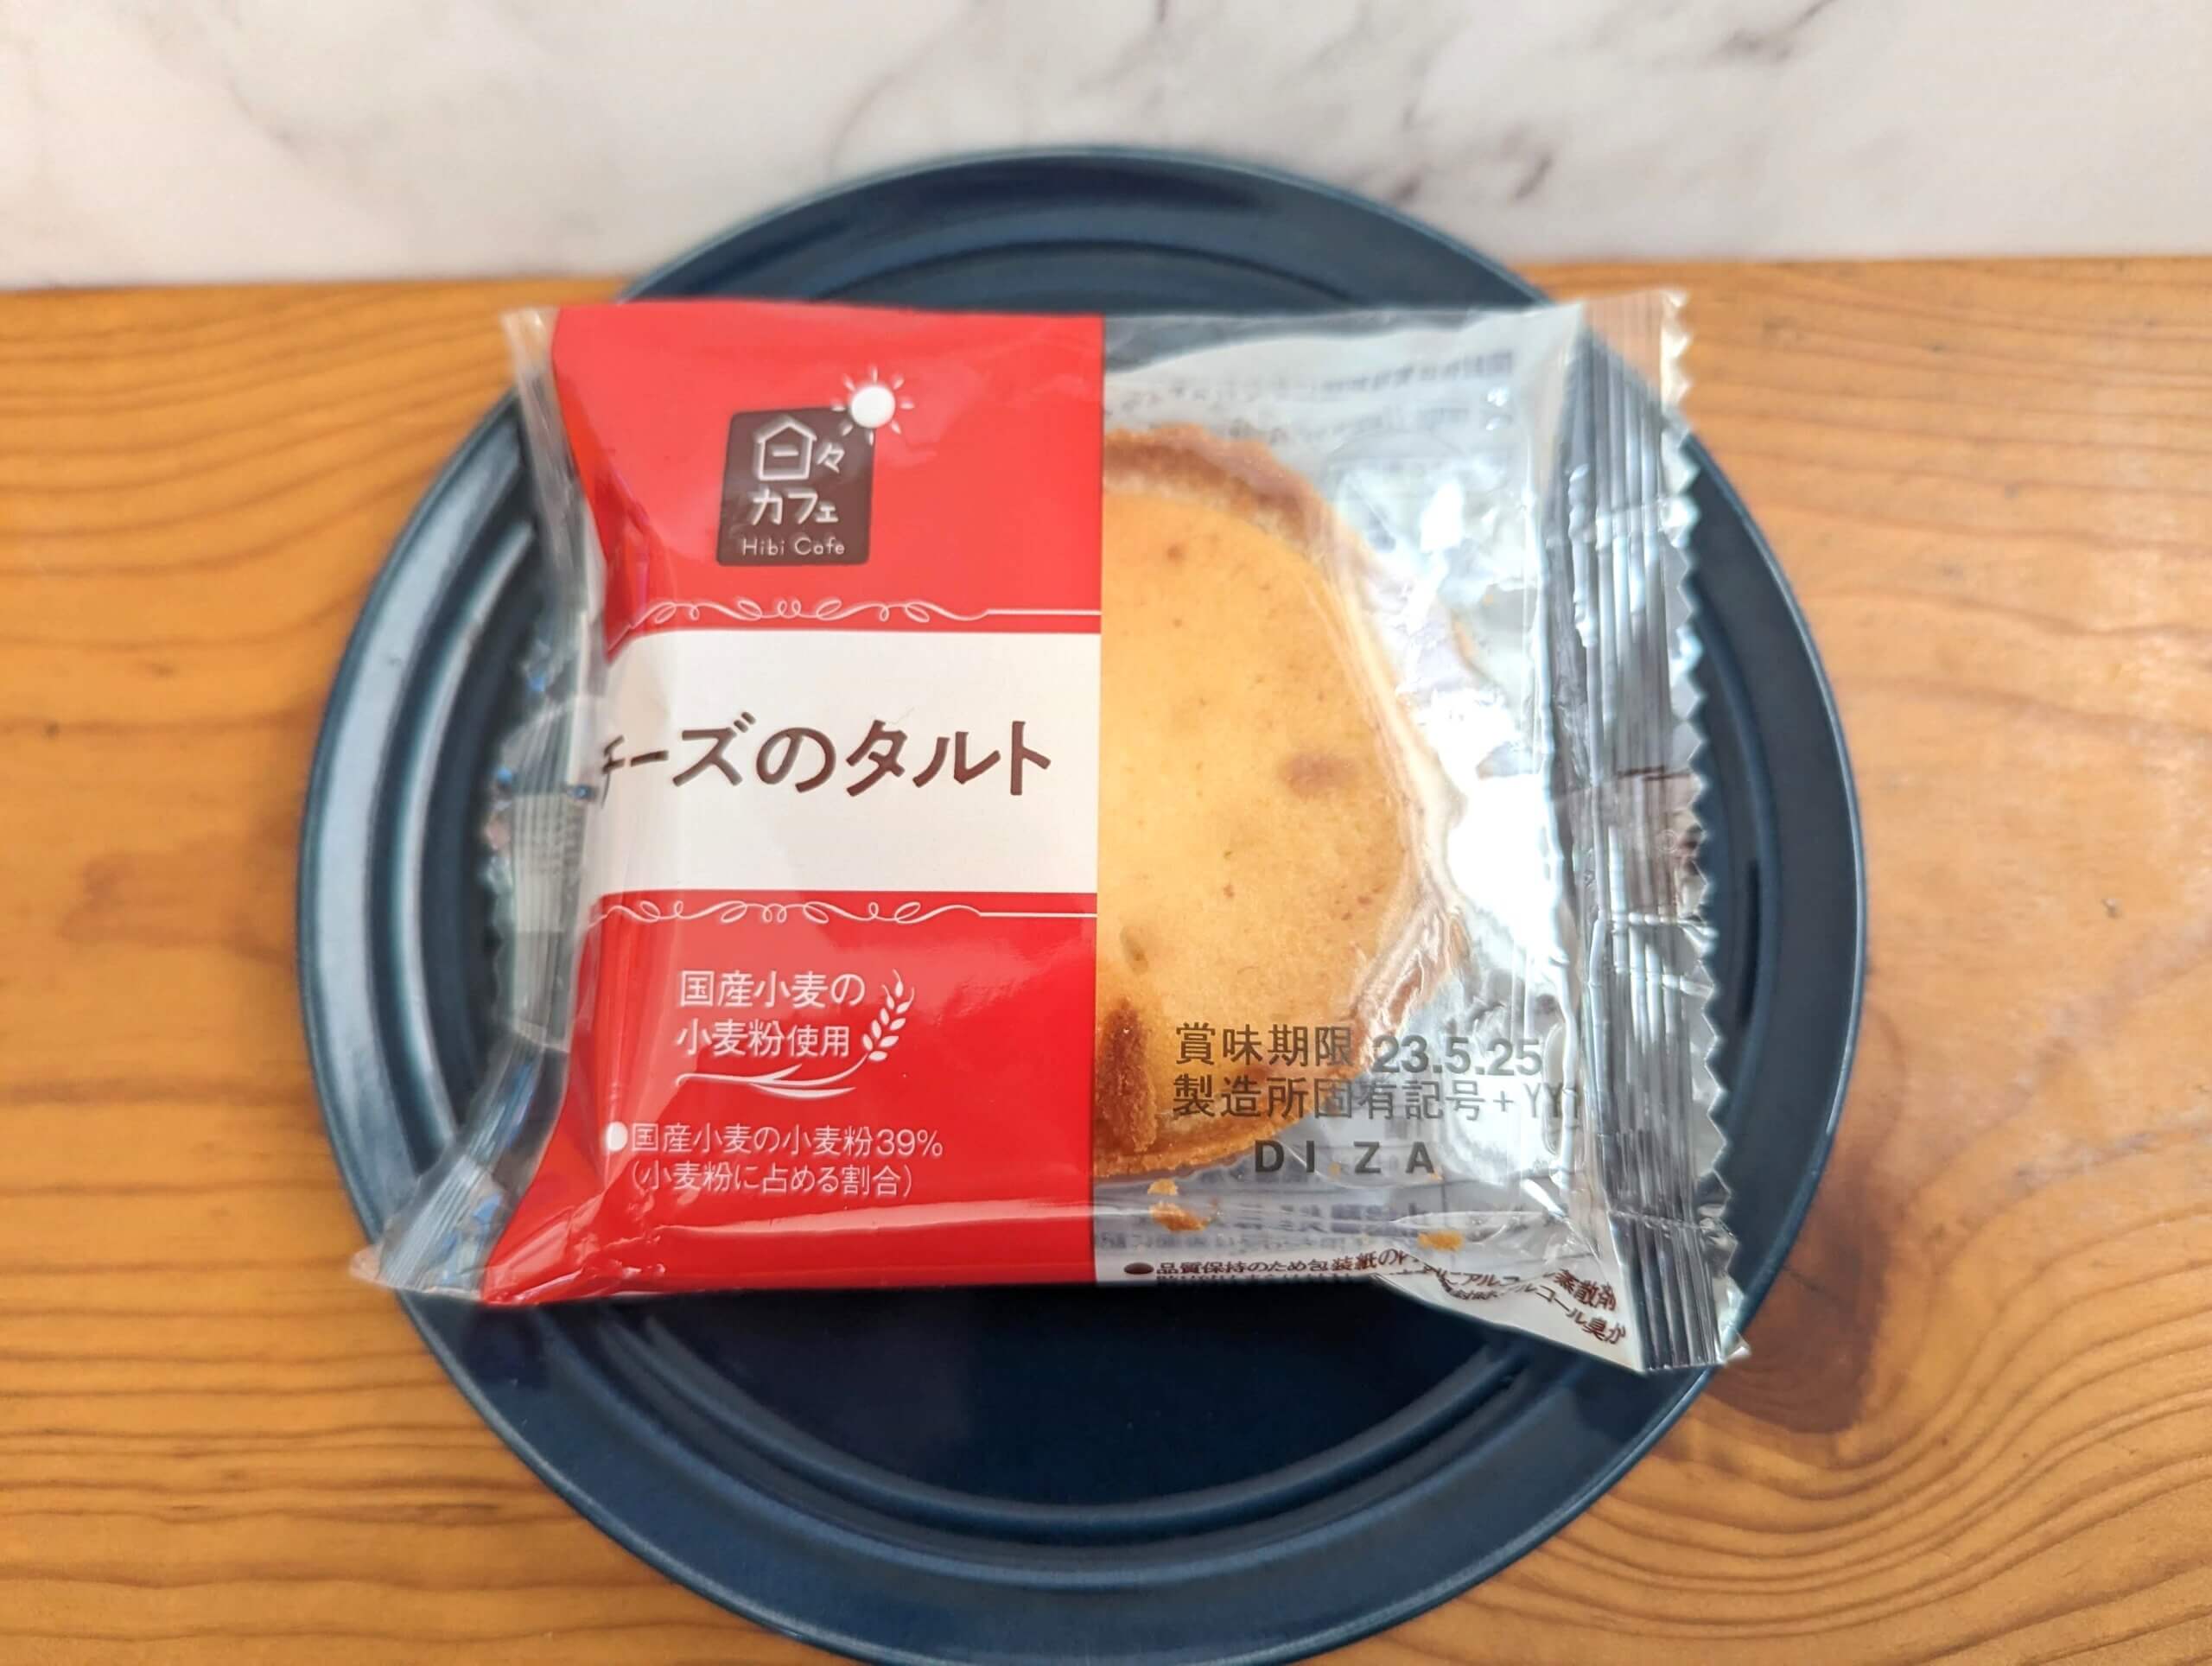 山崎製パン・日々カフェ「チーズのタルト」 (1)